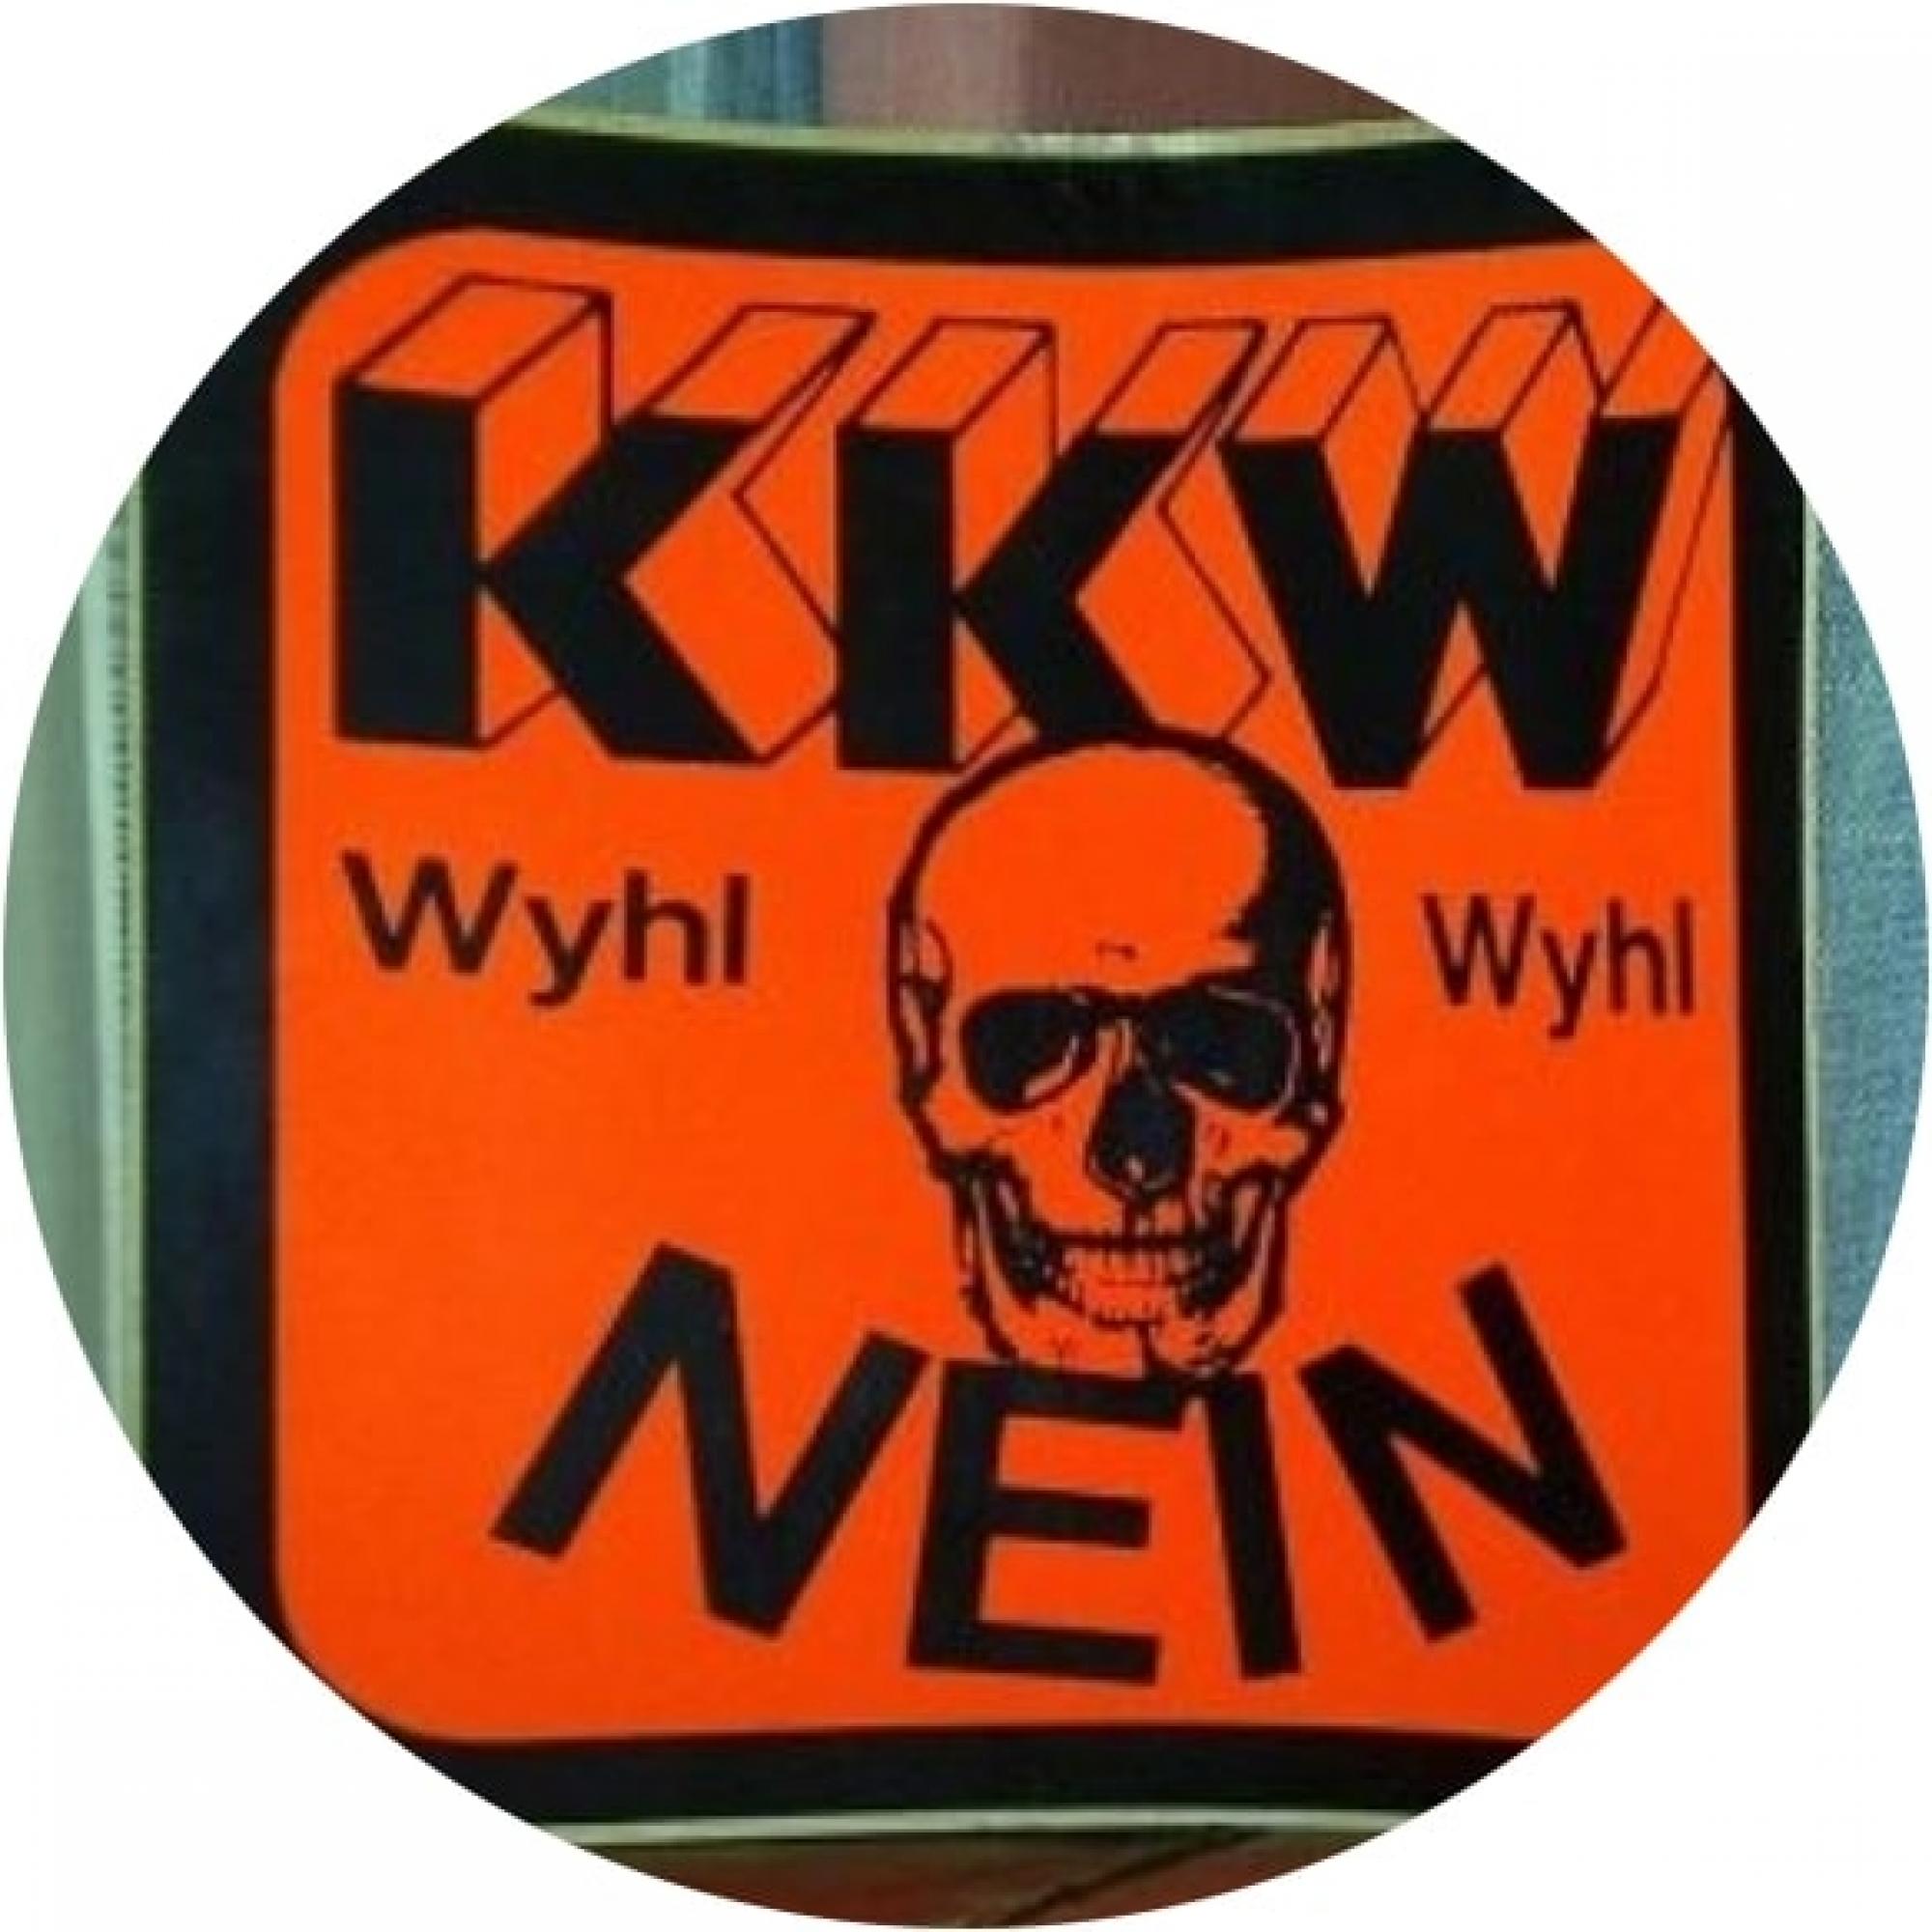 Oranger Aufkleber mit Totenschädel-Motiv und der Aufschrift KKW Wyhl Nein.